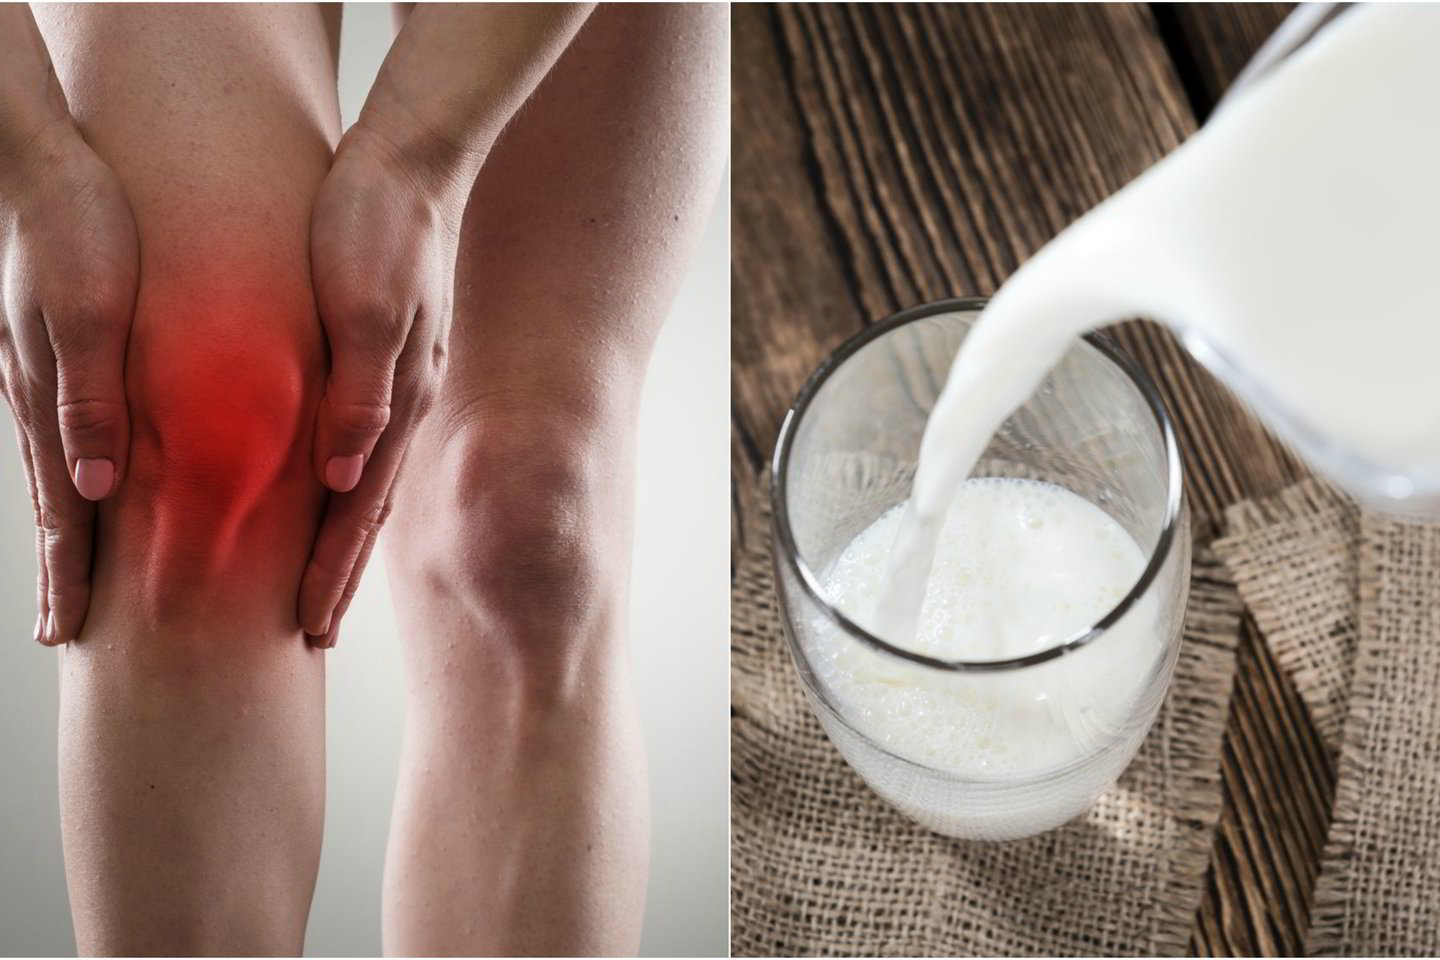  Bakterija, kurią galima aptikti pieno produktuose, gali sukelti reumatoidinį artritą.<br> 123rf.com nuotr.